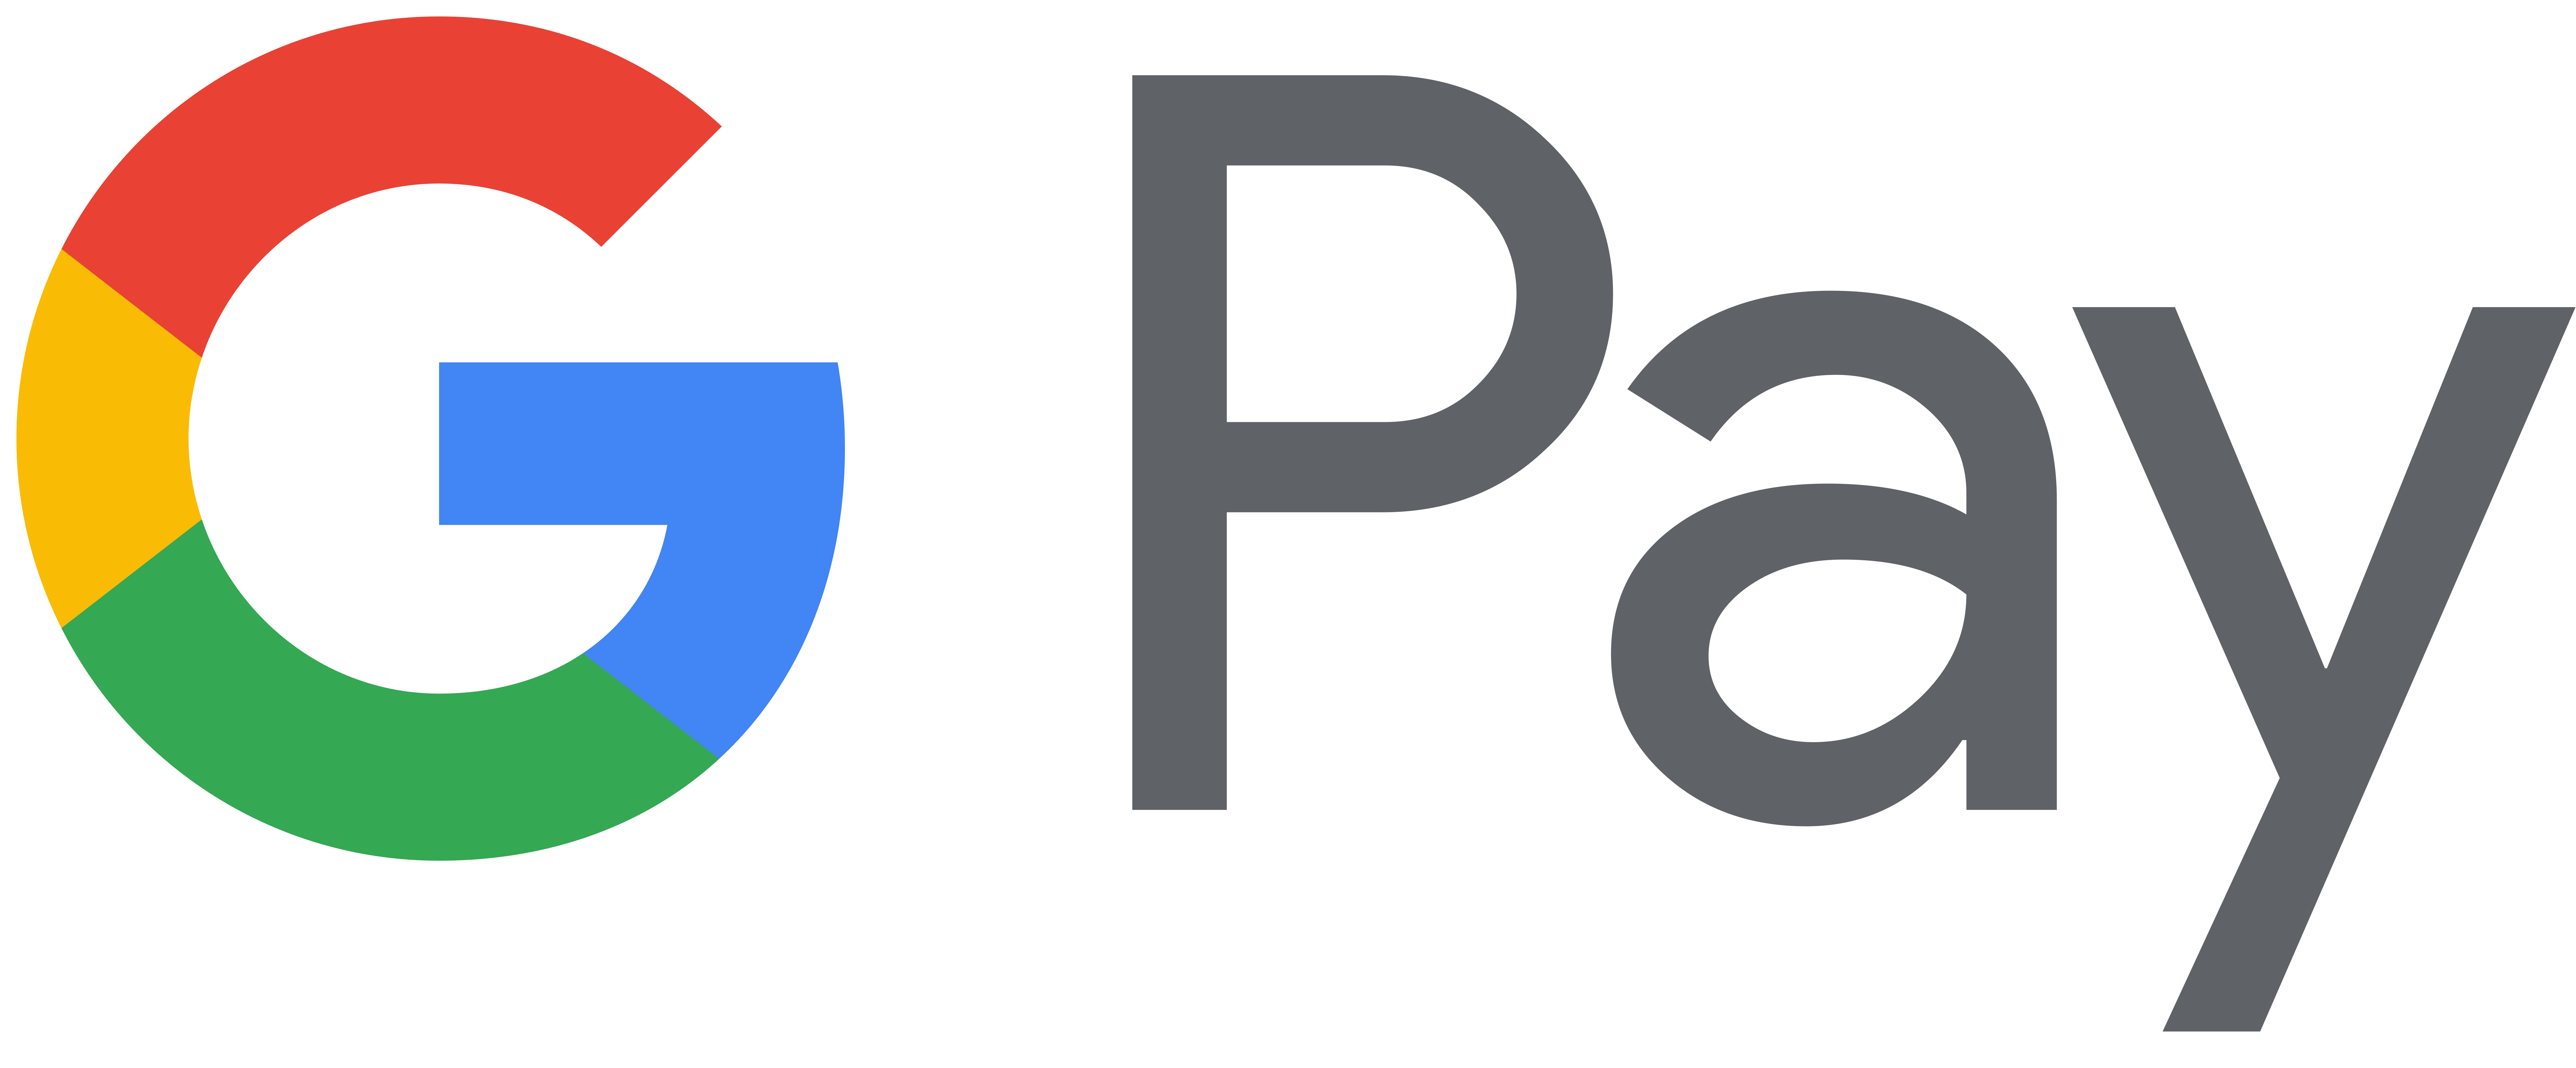 Google Pay (GPay) Logo PNG Image.